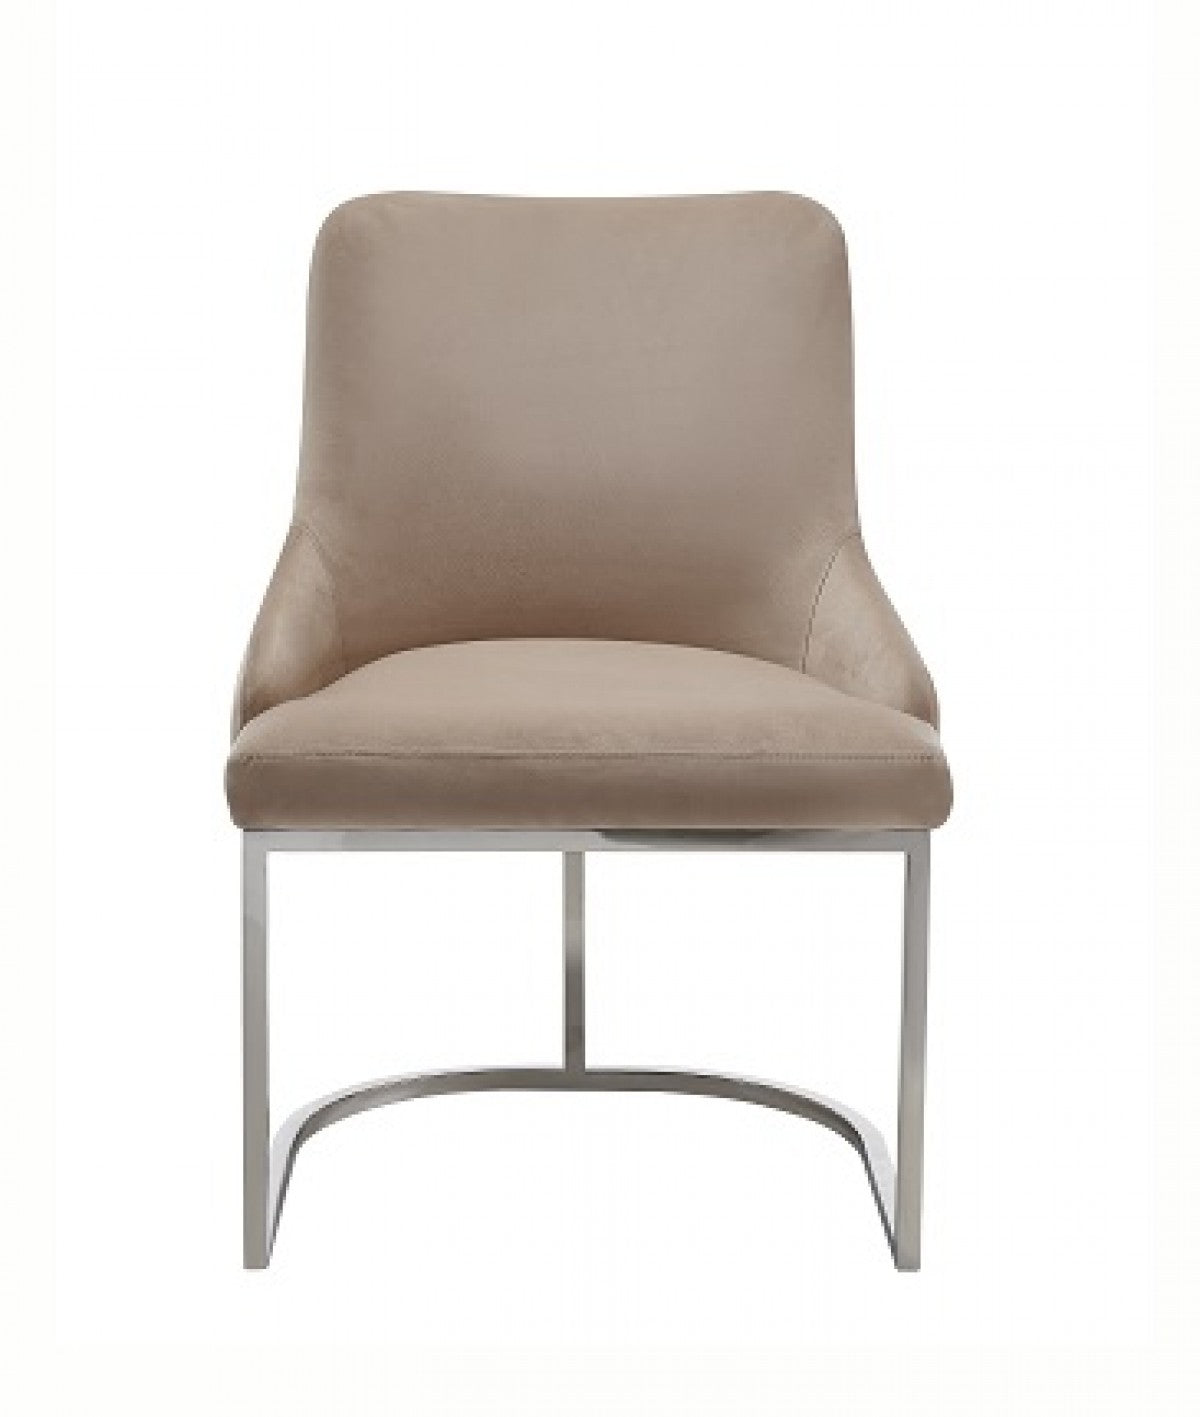 Modrest Daria - Modern Beige Velvet and Stainless Steel Dining Chair Set of 2